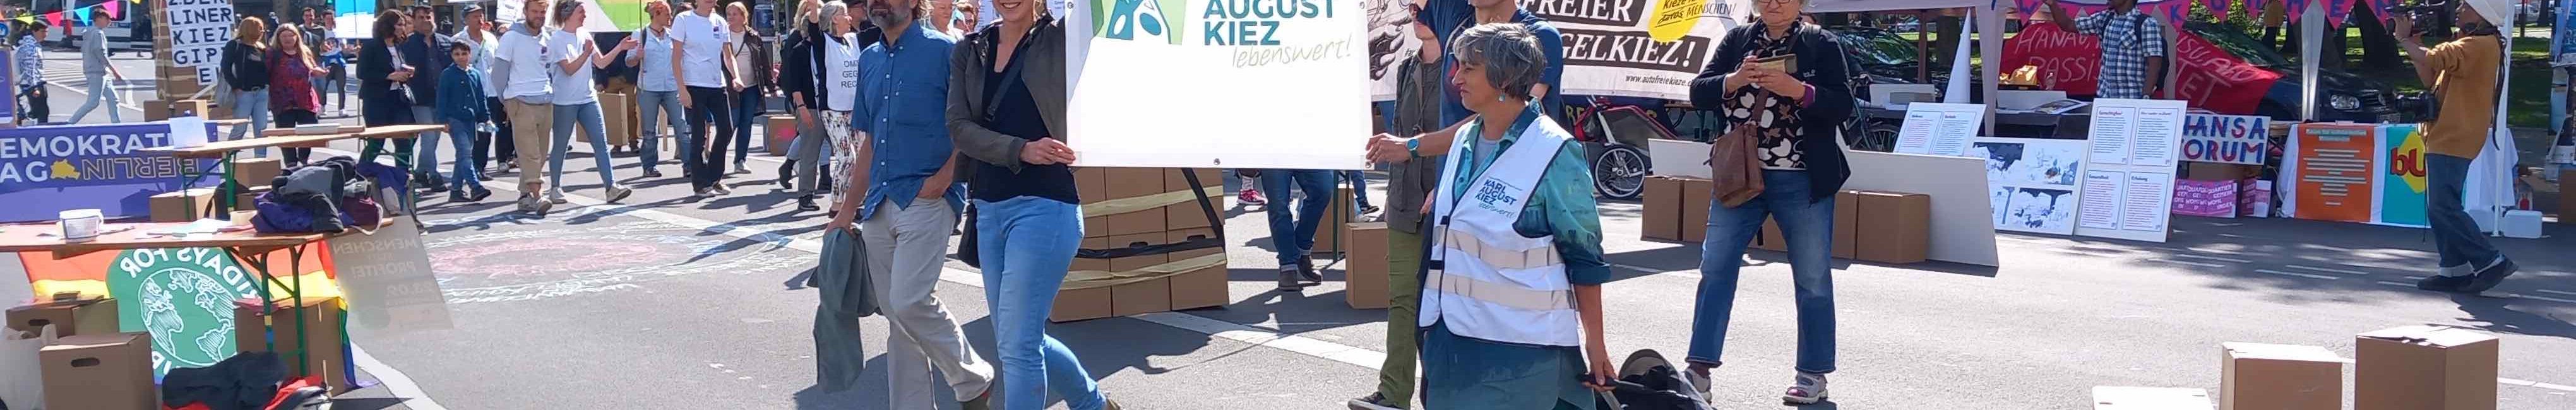 Die Nachbarschaftsinitiative Karl-August-Kiez Lebenswert beim Einzug der Initiativen auf dem Kiezgipfel